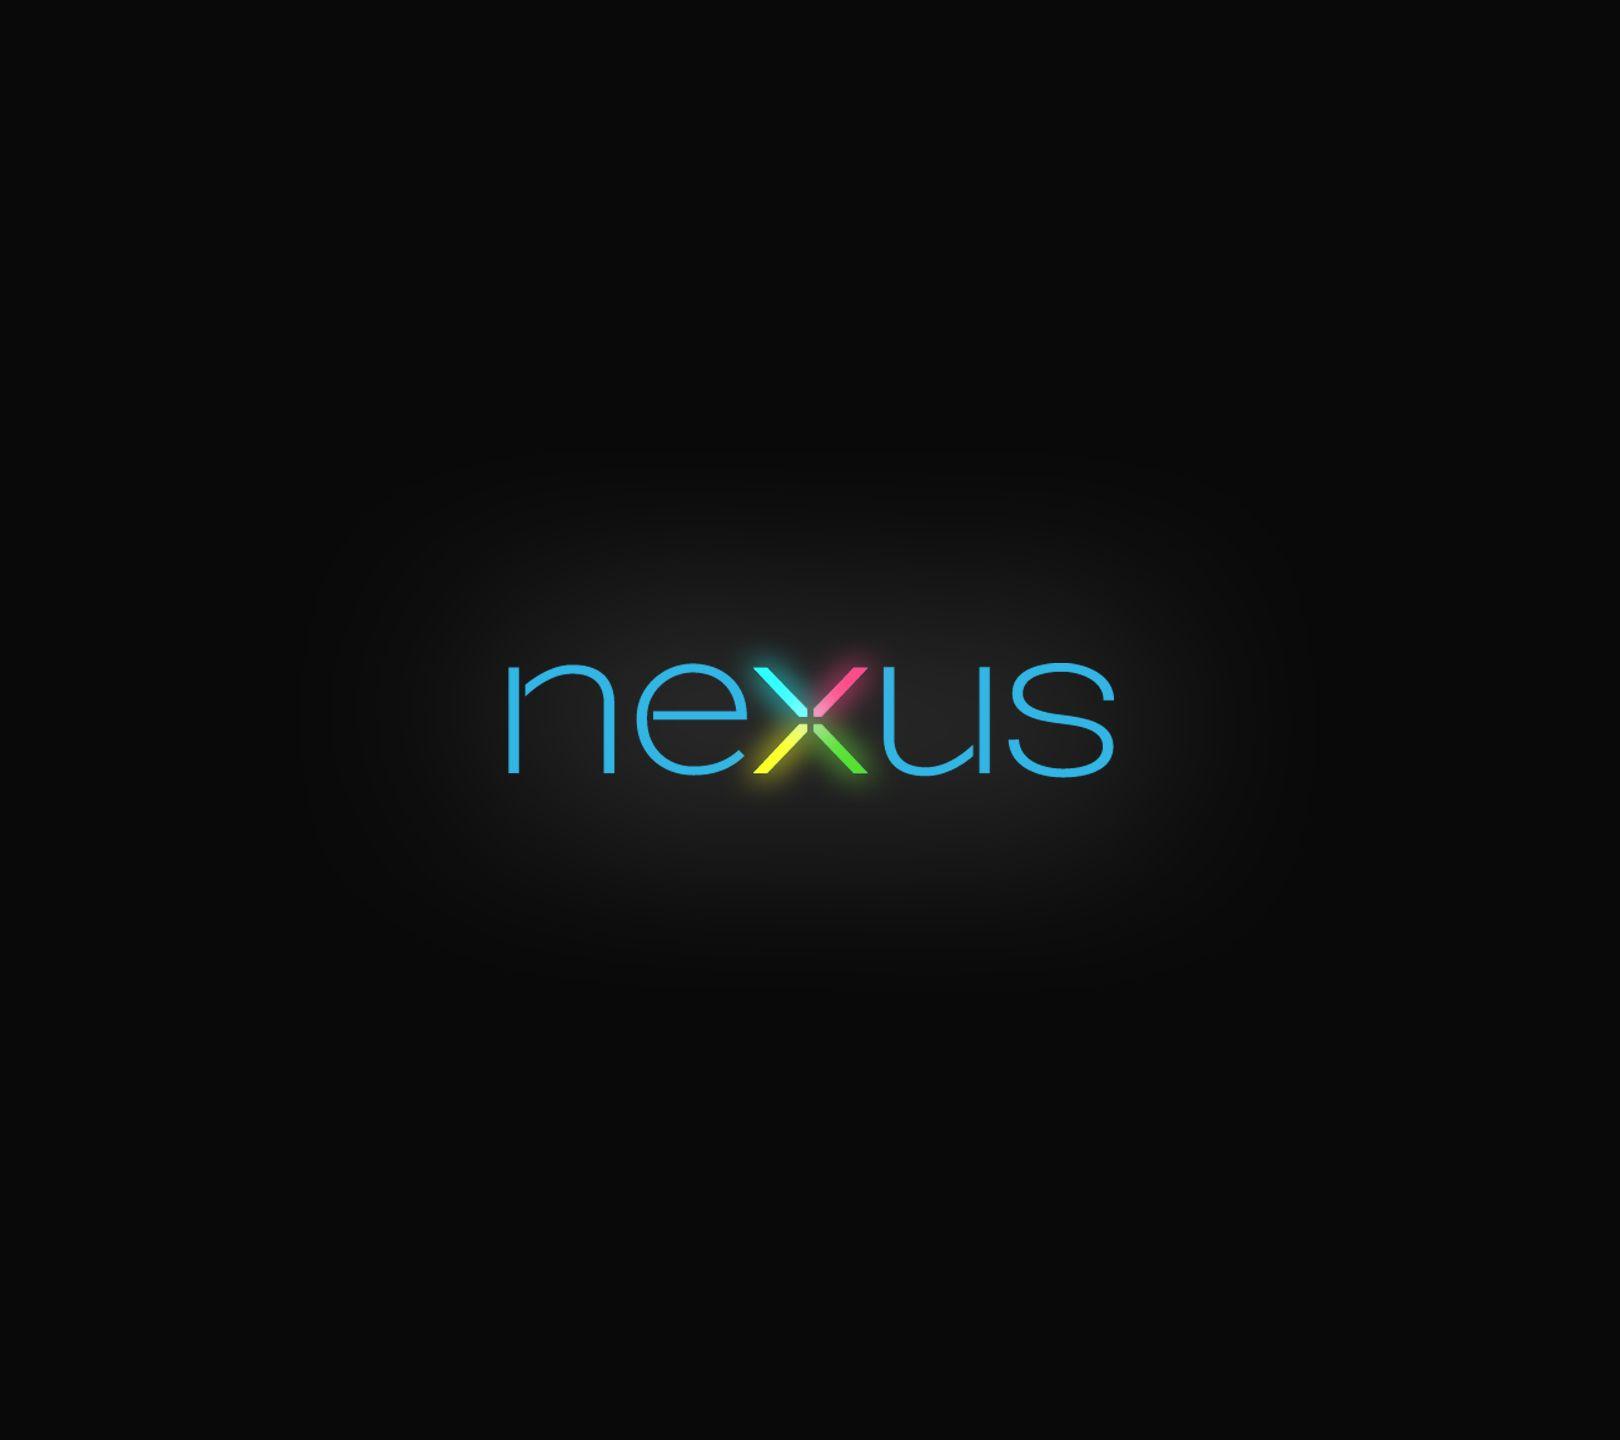 Nexus 5x Wallpaper (Picture)